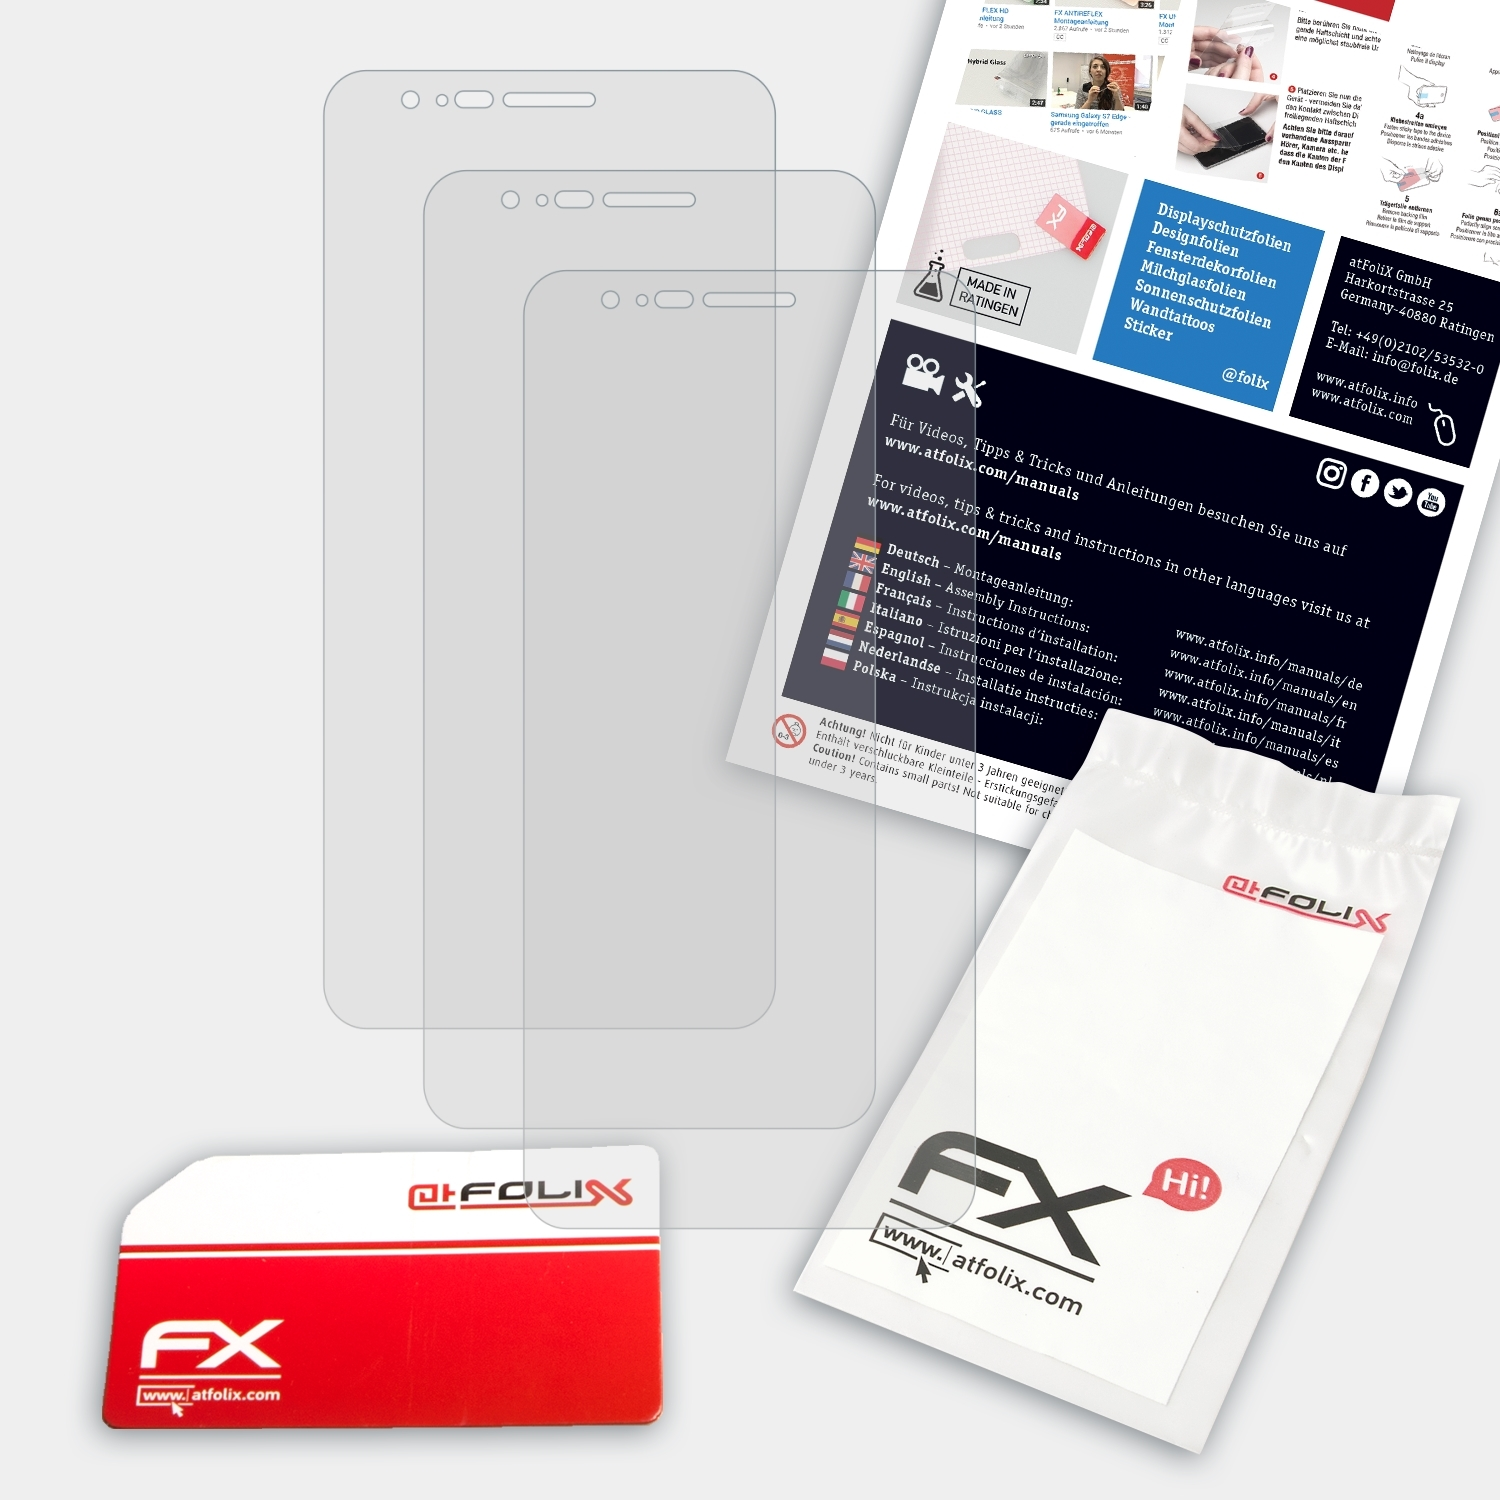 Energy 3x Phicomm Displayschutz(für ATFOLIX FX-Antireflex 4s)